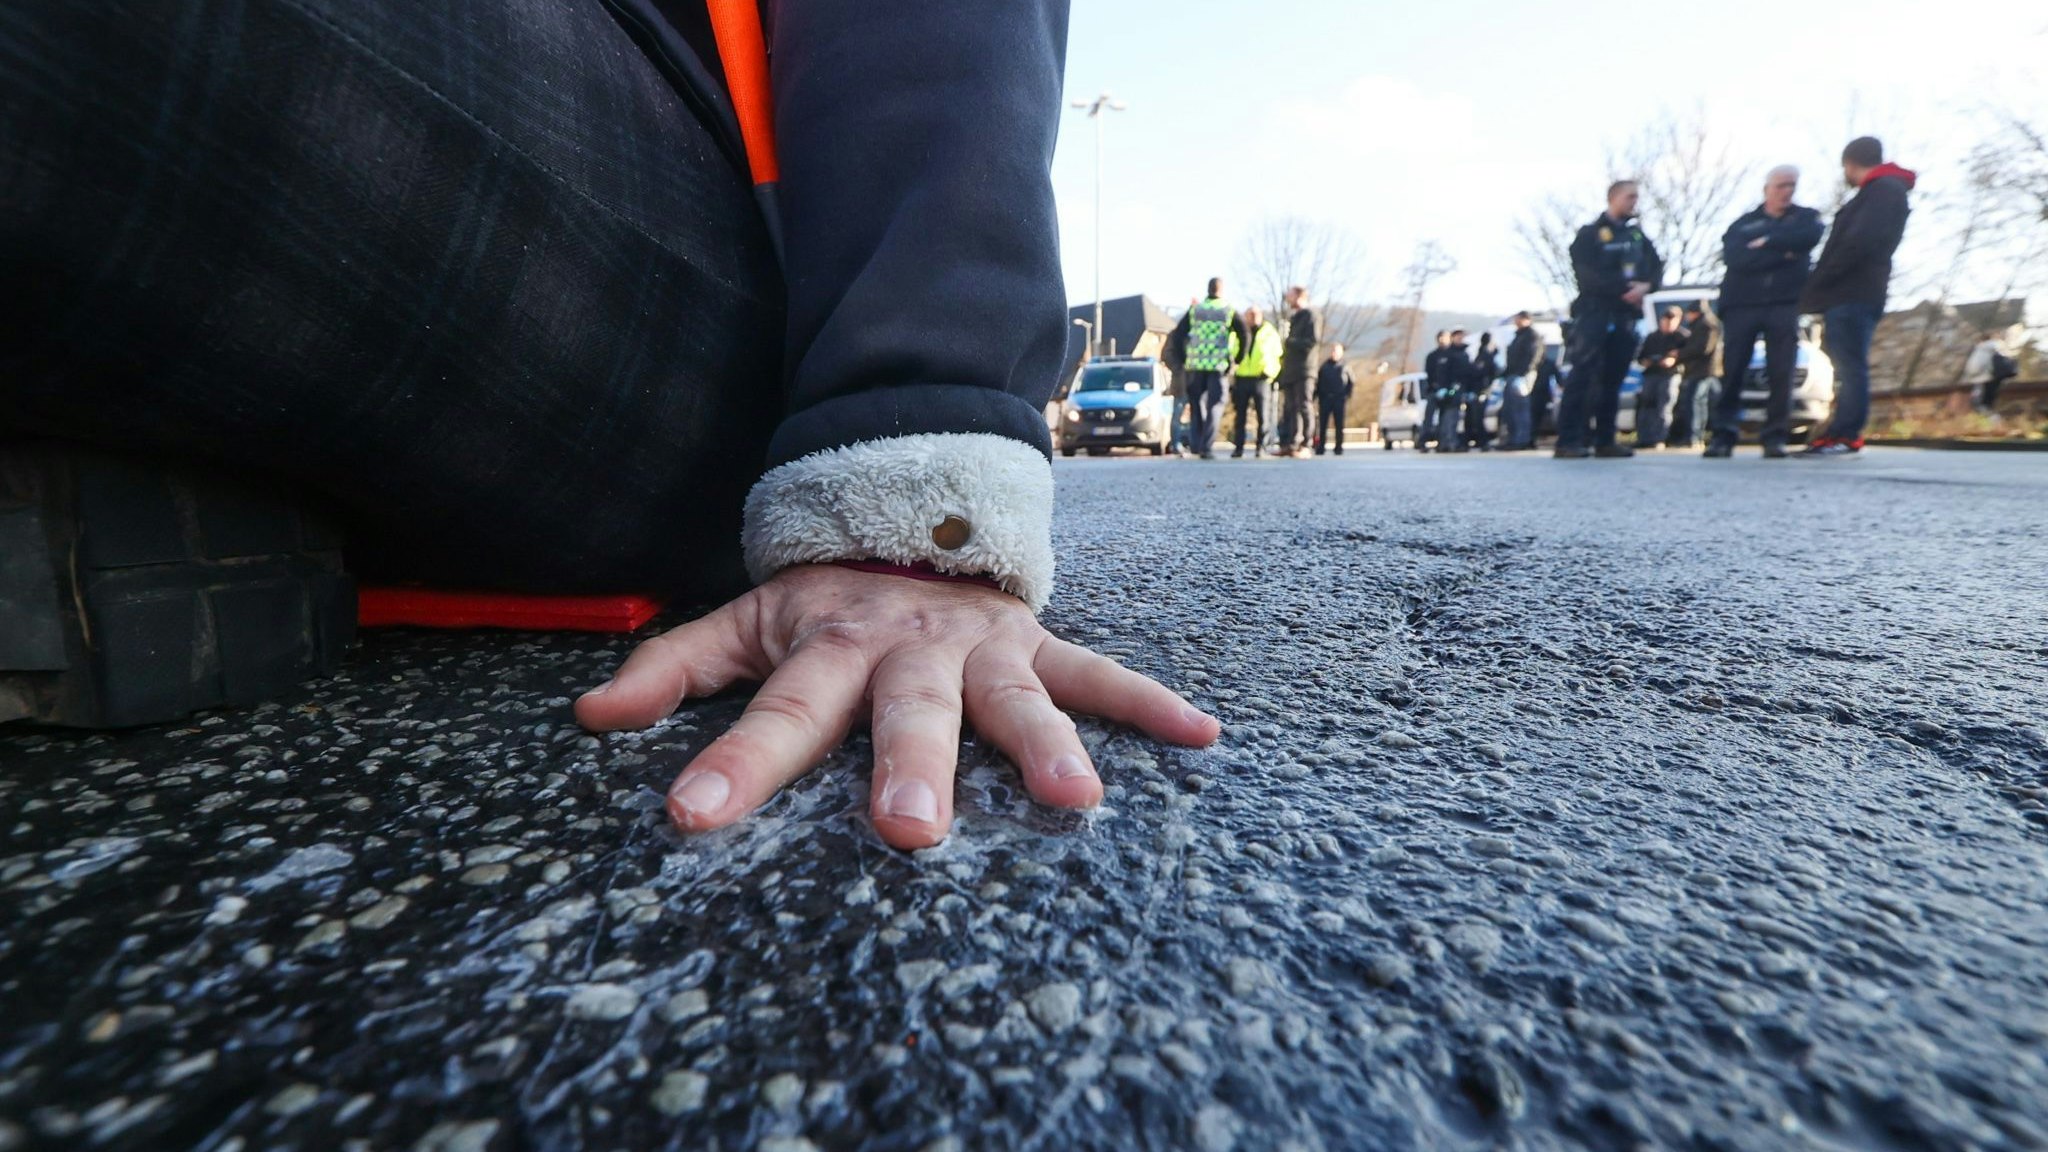 Festgeklebt auf der Straße: Auch robuste Blockadeaktionen fallen unter das Versammlungsrecht. Foto: Nadine Weigel / dpa